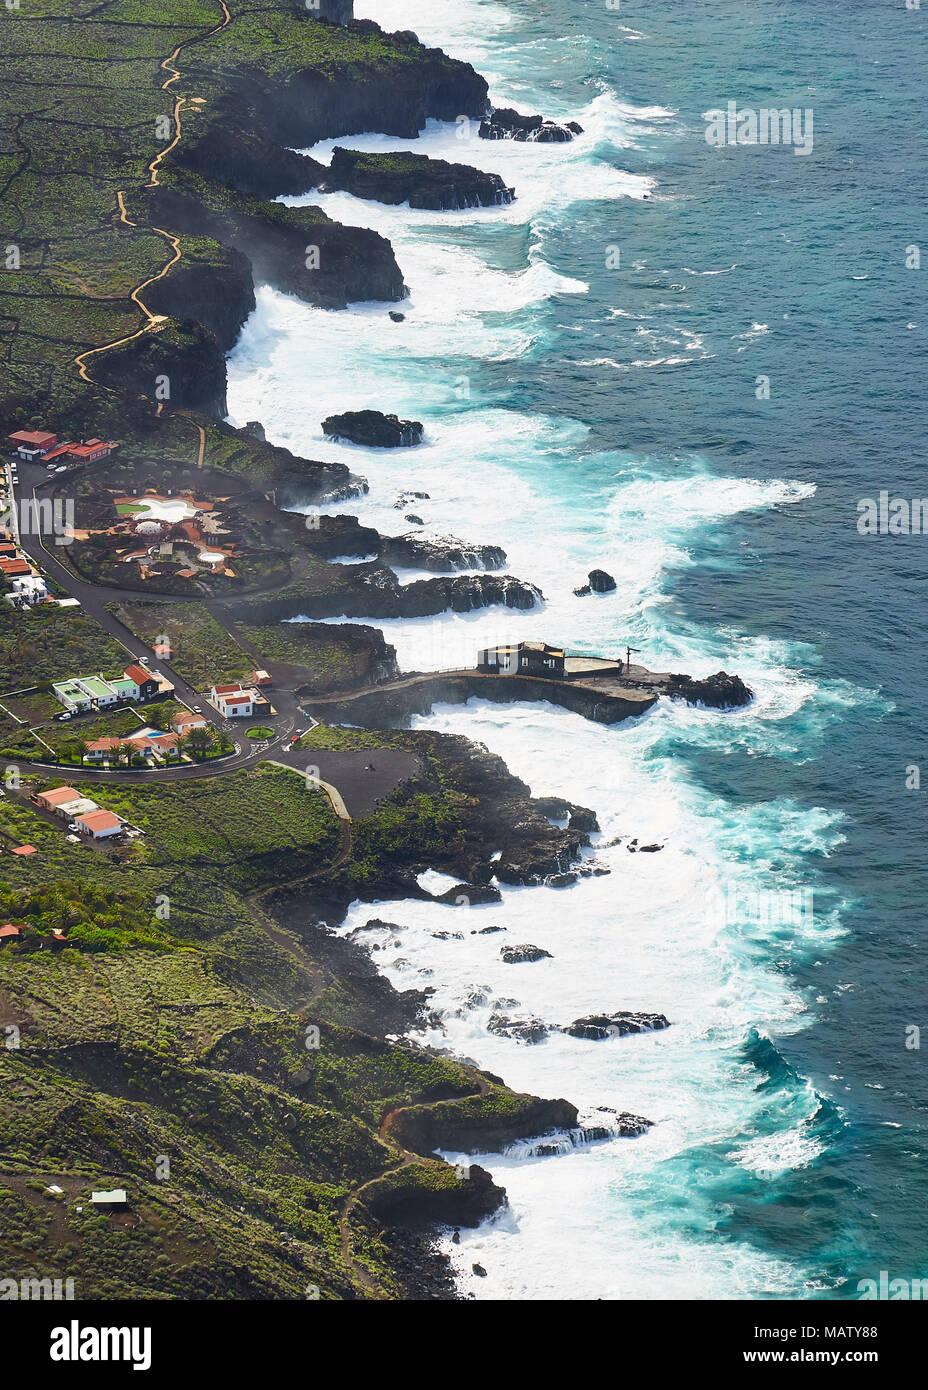 View of La Frontera gulf coastline and the Punta Grande Hotel from the Mirador de la Peña overlook in El Hierro, Canary Islands, Spain Stock Photo